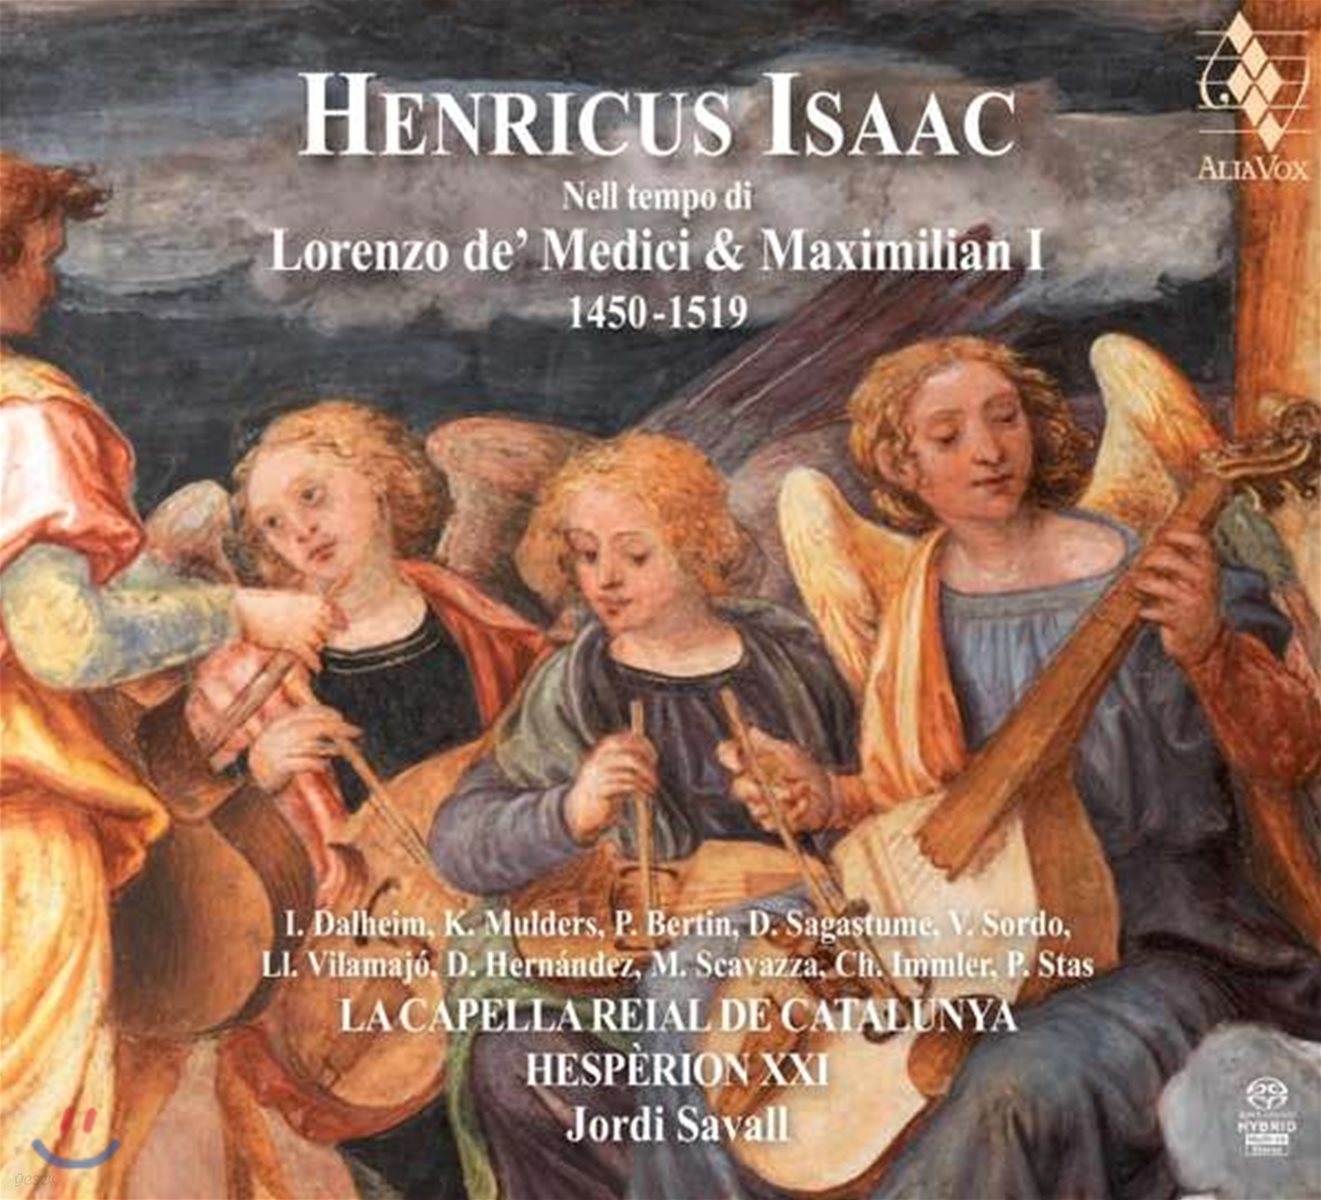 Jordi Savall 하인리히 이자크: 로렌초 데 메디치 &amp; 막시밀리안 1세 시대 음악 - 조르디 사발, 에스페리옹 21 (Heinrich Isaac: Lorenzo de&#39; Medici &amp; Maximilian 1 1450-1519)